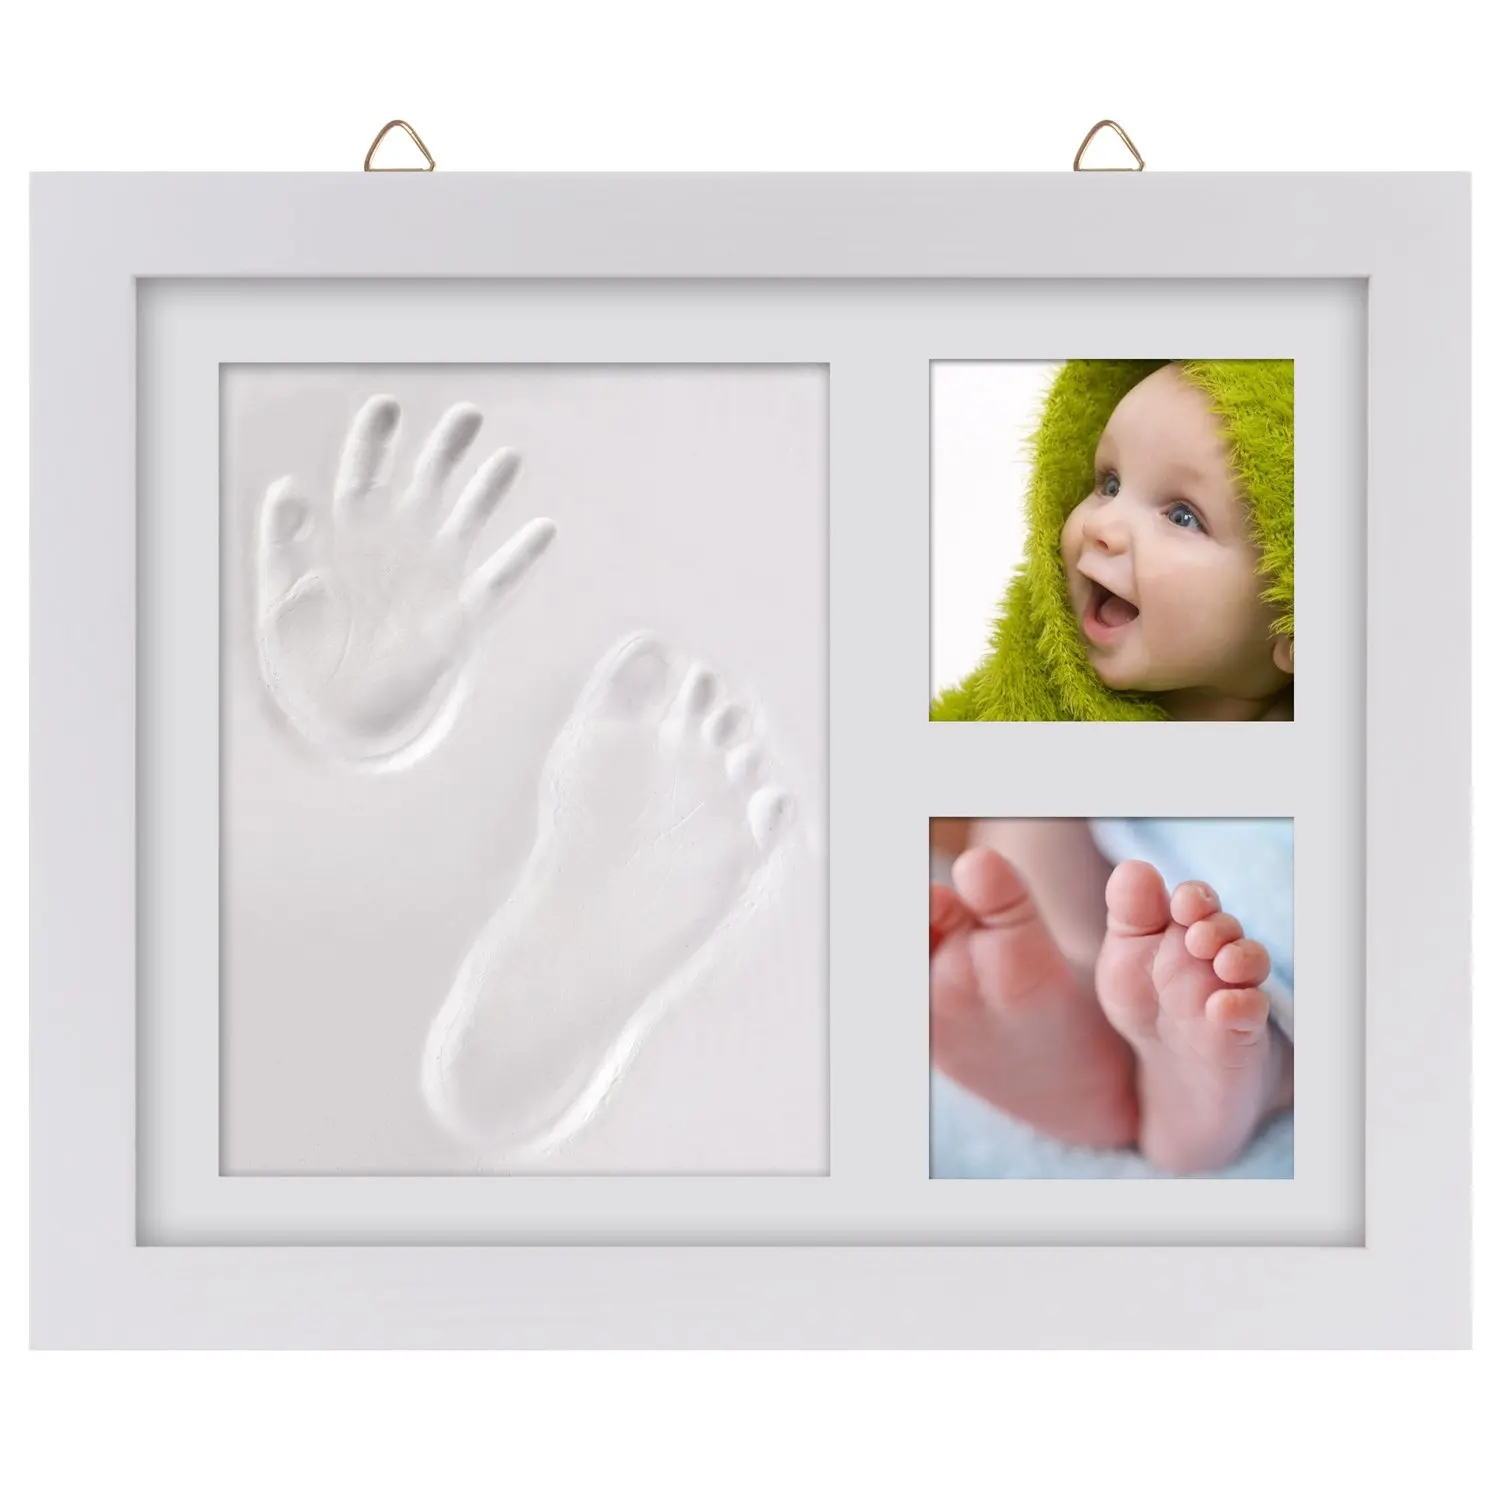 babyprints desktop frame